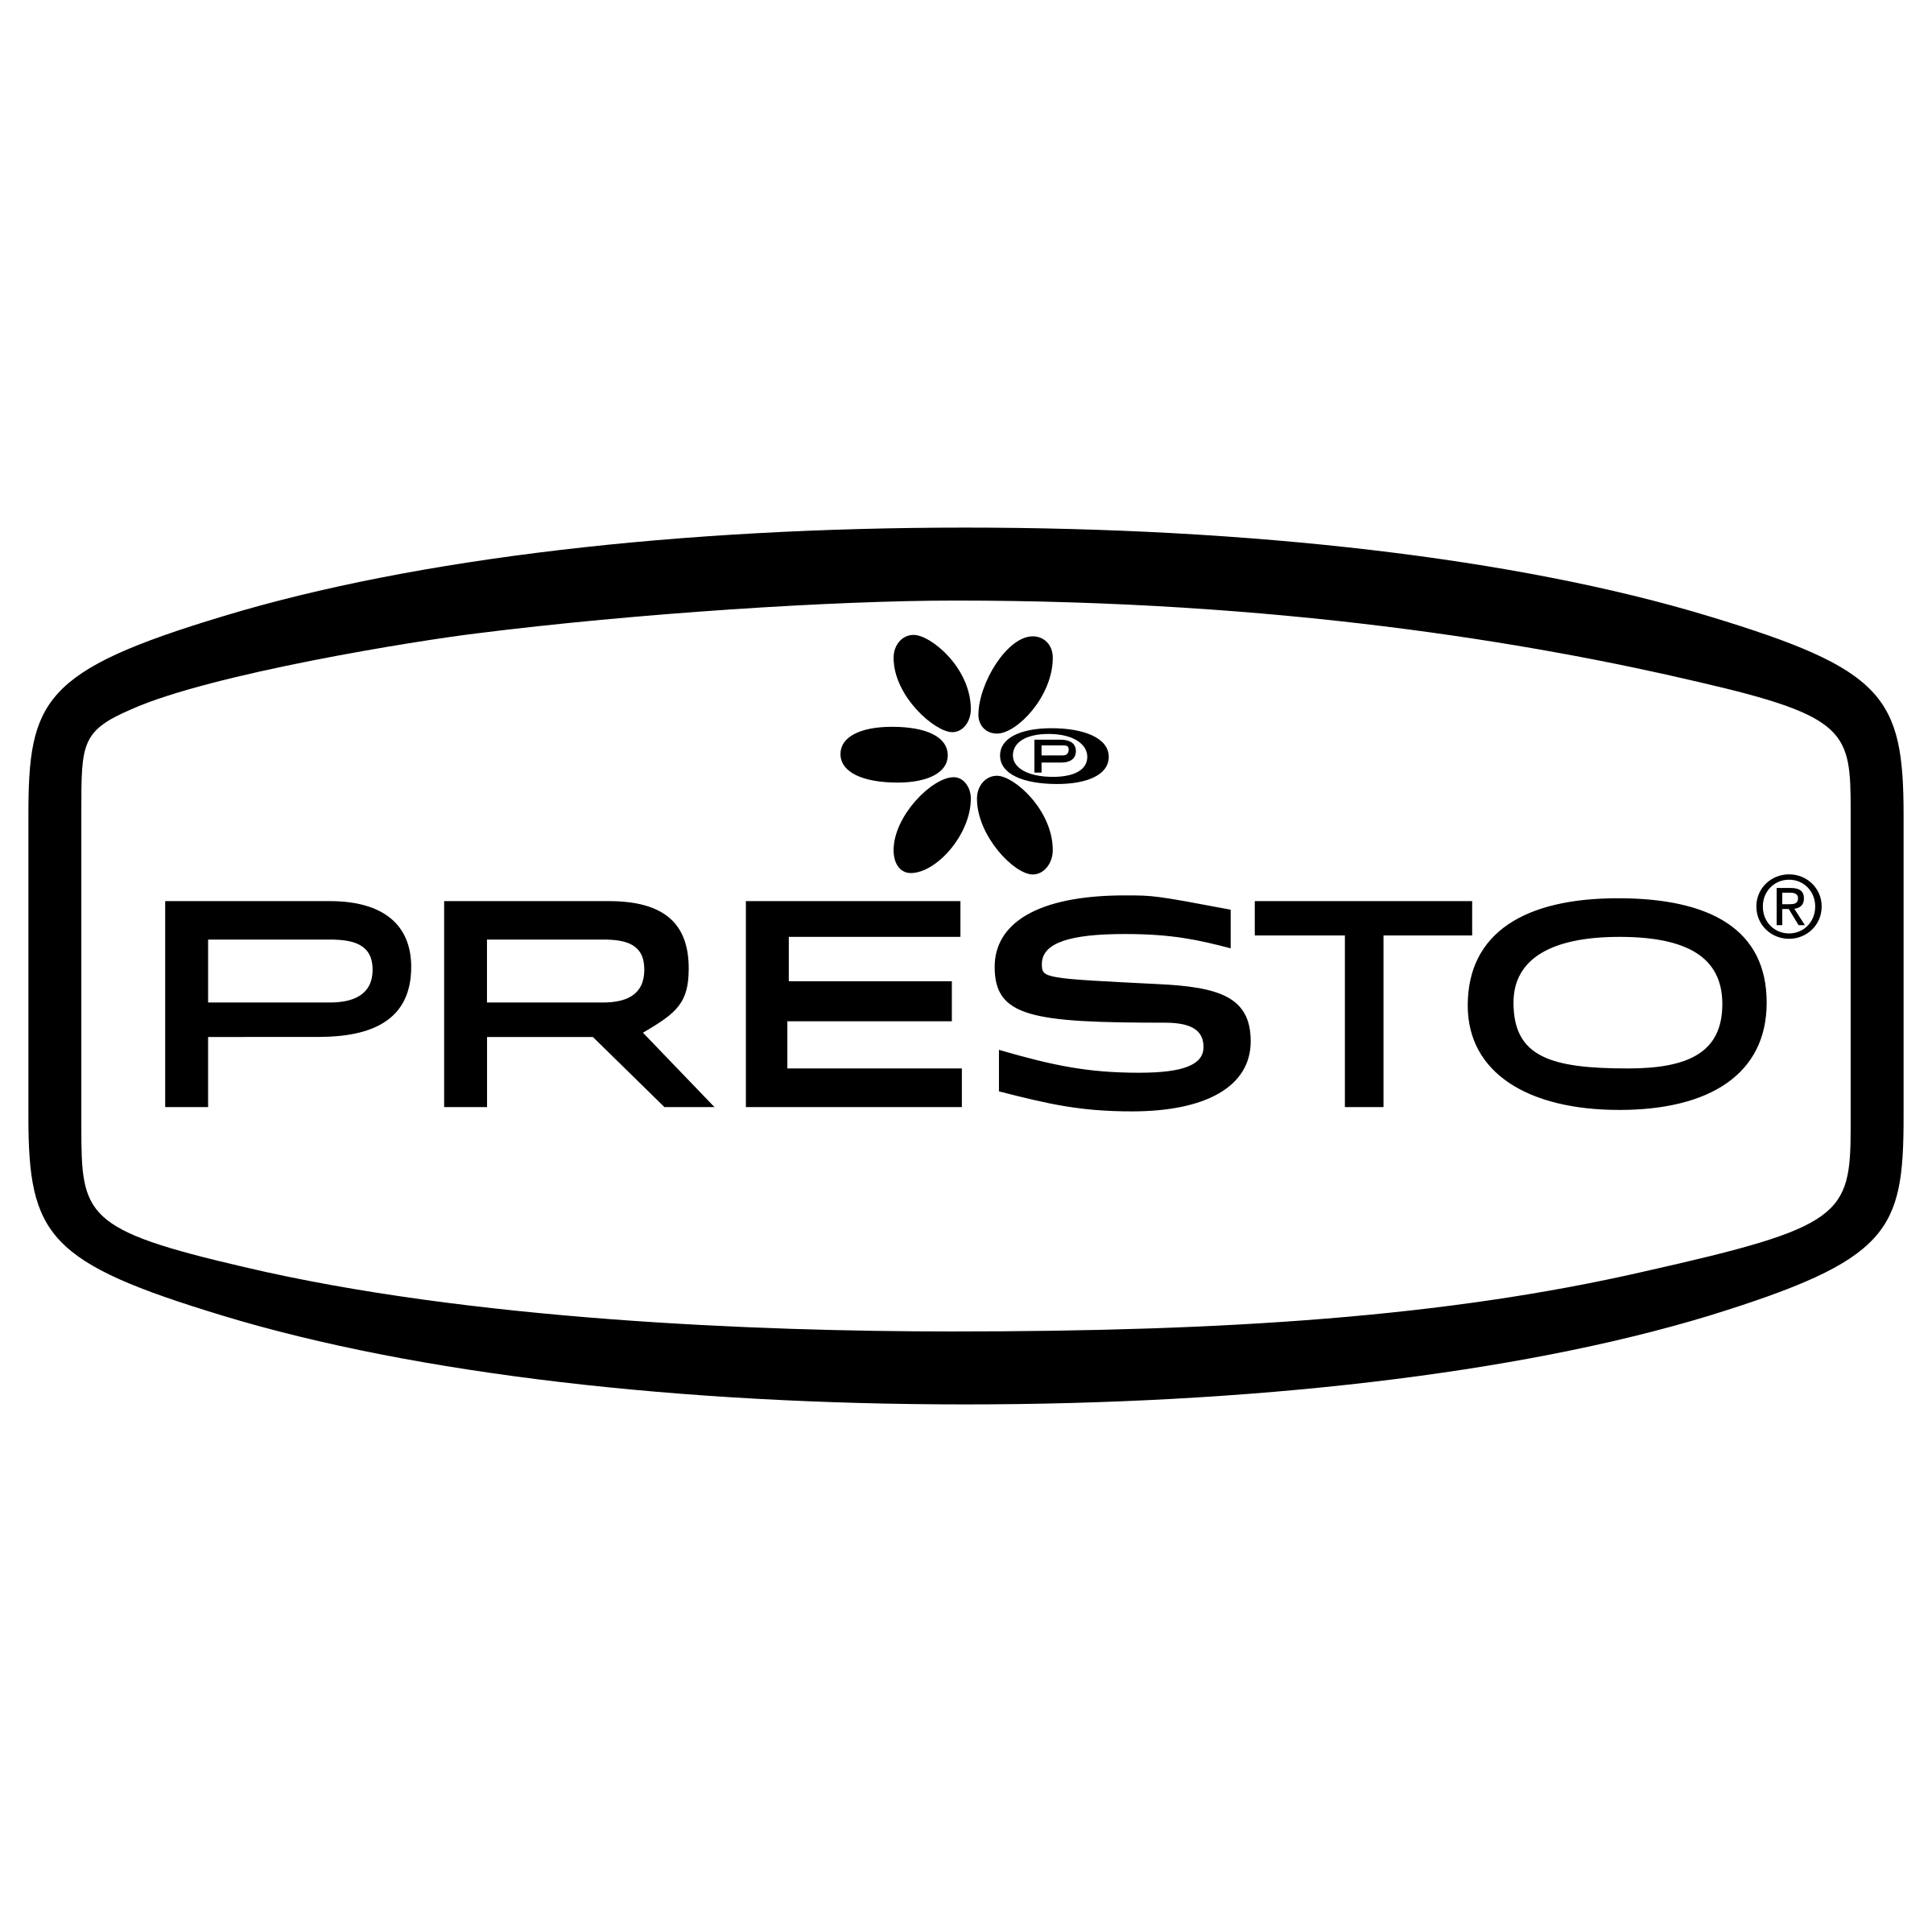 Presto Logo - Presto Logo PNG Transparent & SVG Vector - Freebie Supply